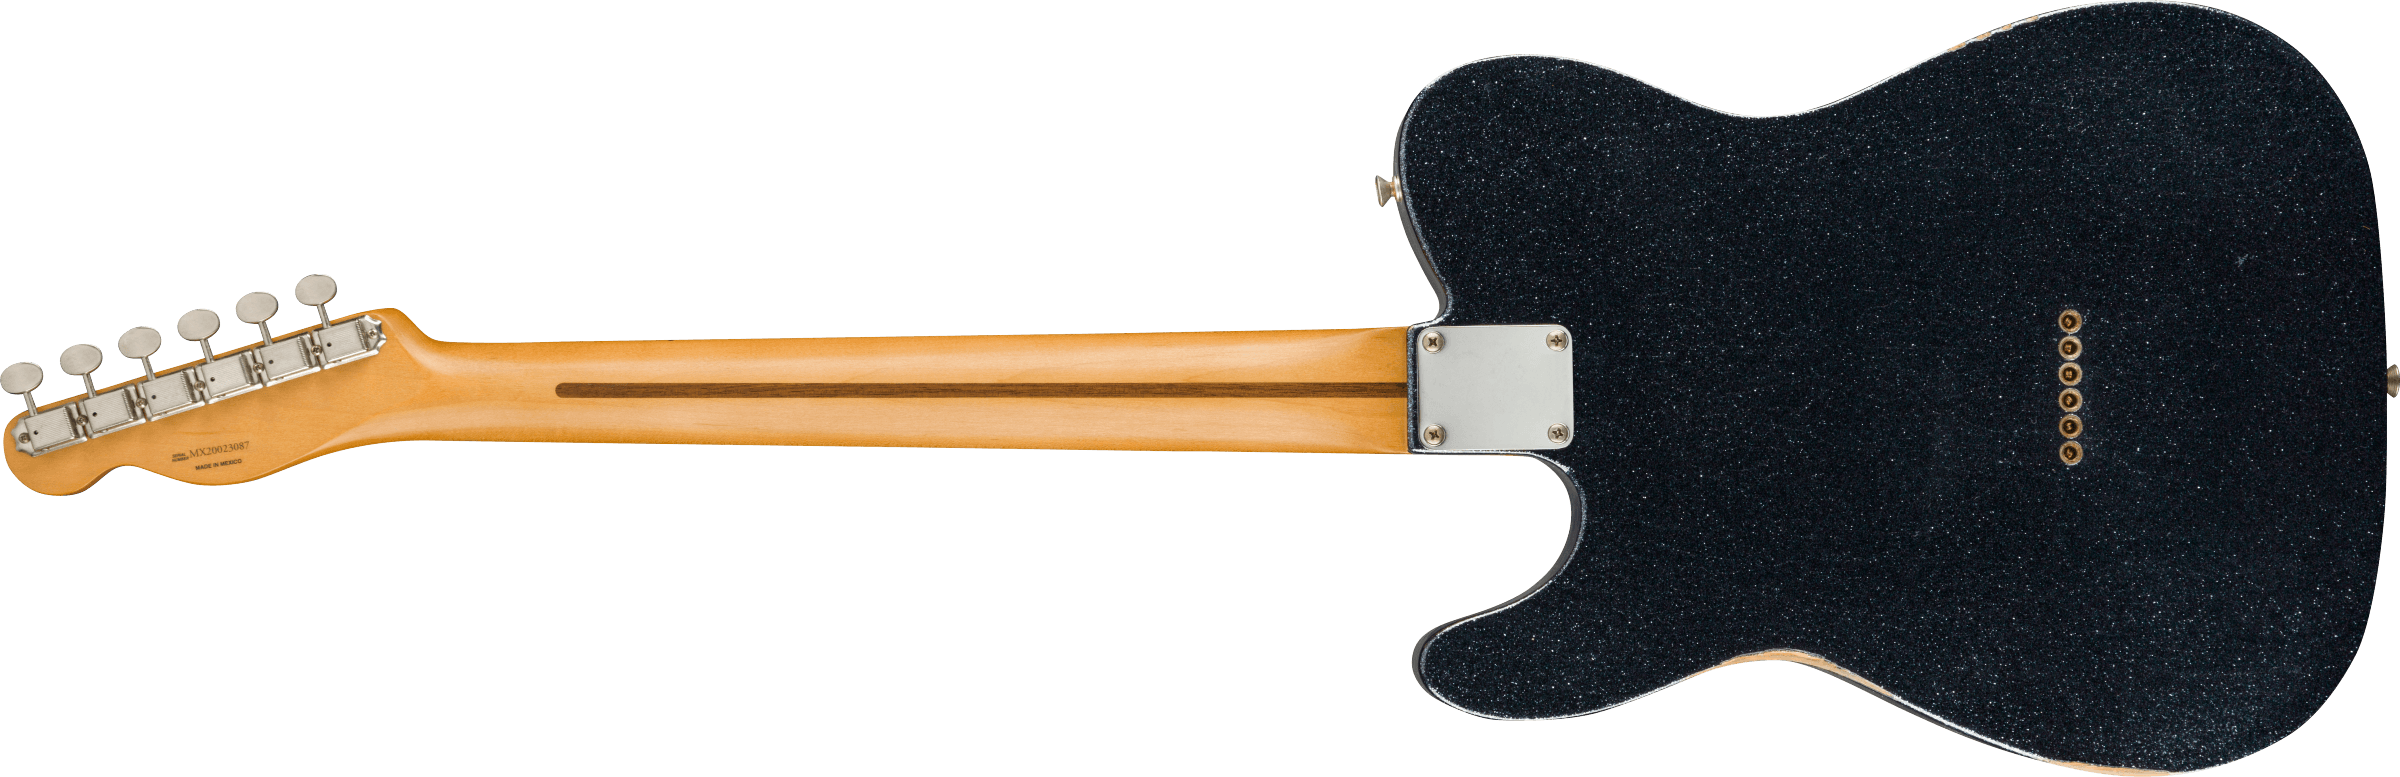 Fender Brad Paisley Esquire Tele Signature Mex Mn - Road Worn Black Sparkle - Guitare Électrique Forme Tel - Variation 1